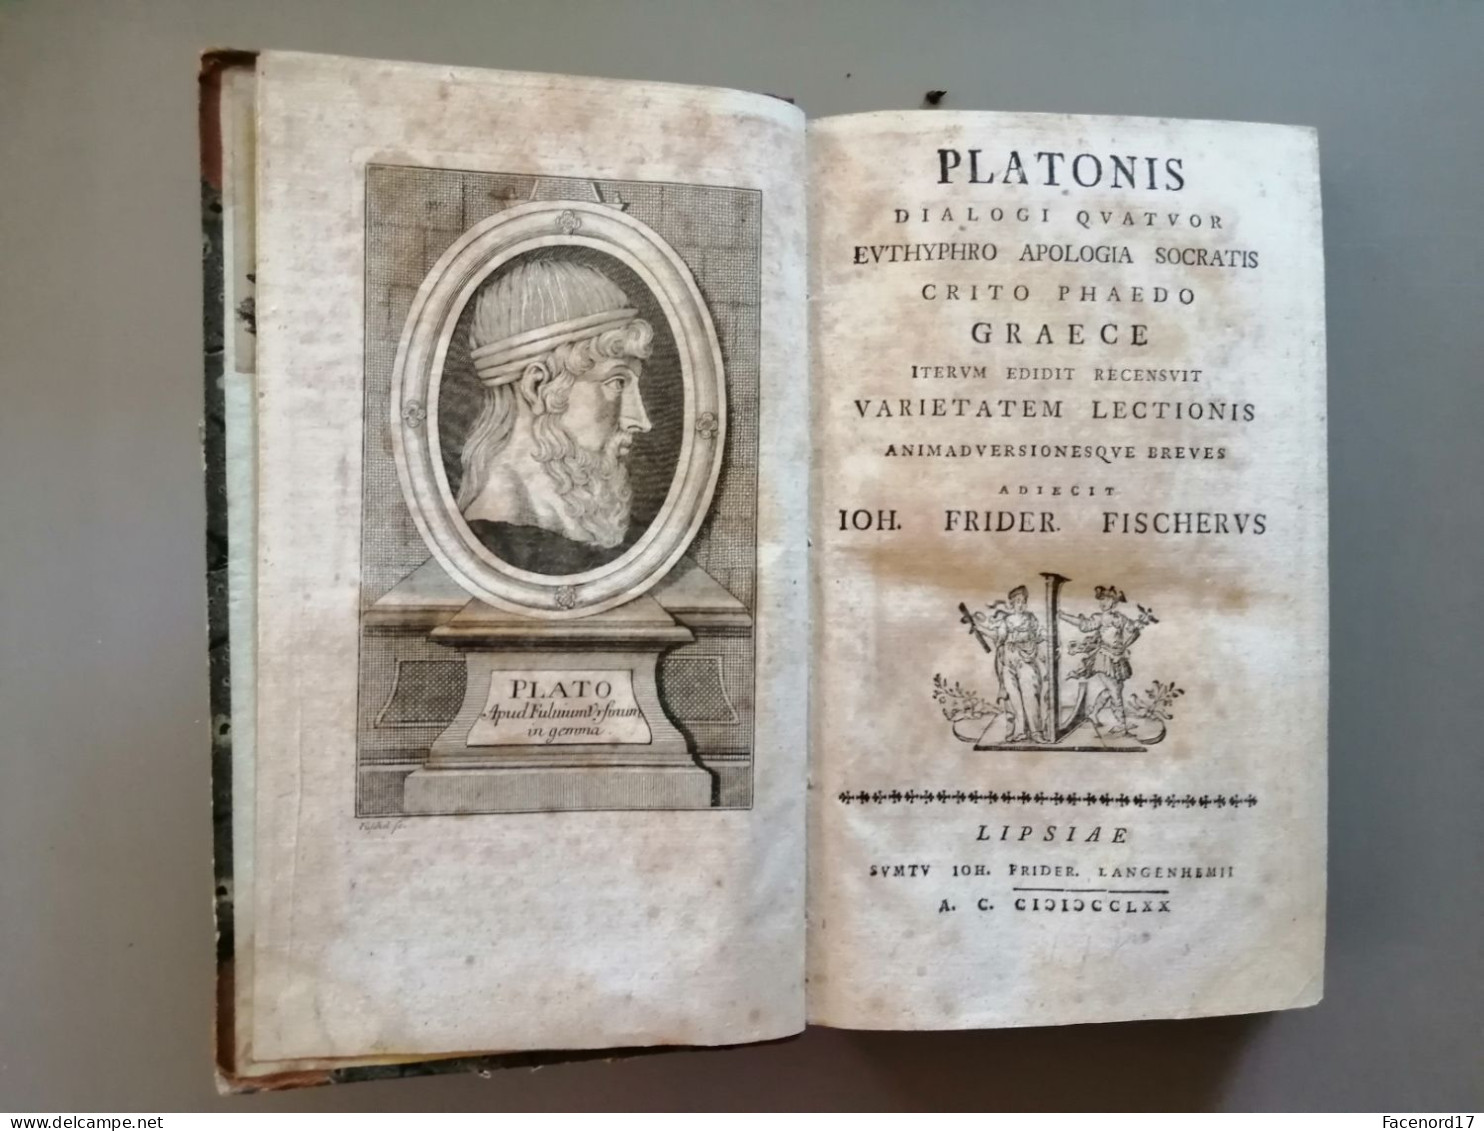 Platonis dialogi quator euthyphro apologia socratis crito phaedo graece Langenheim Leipzig 1770